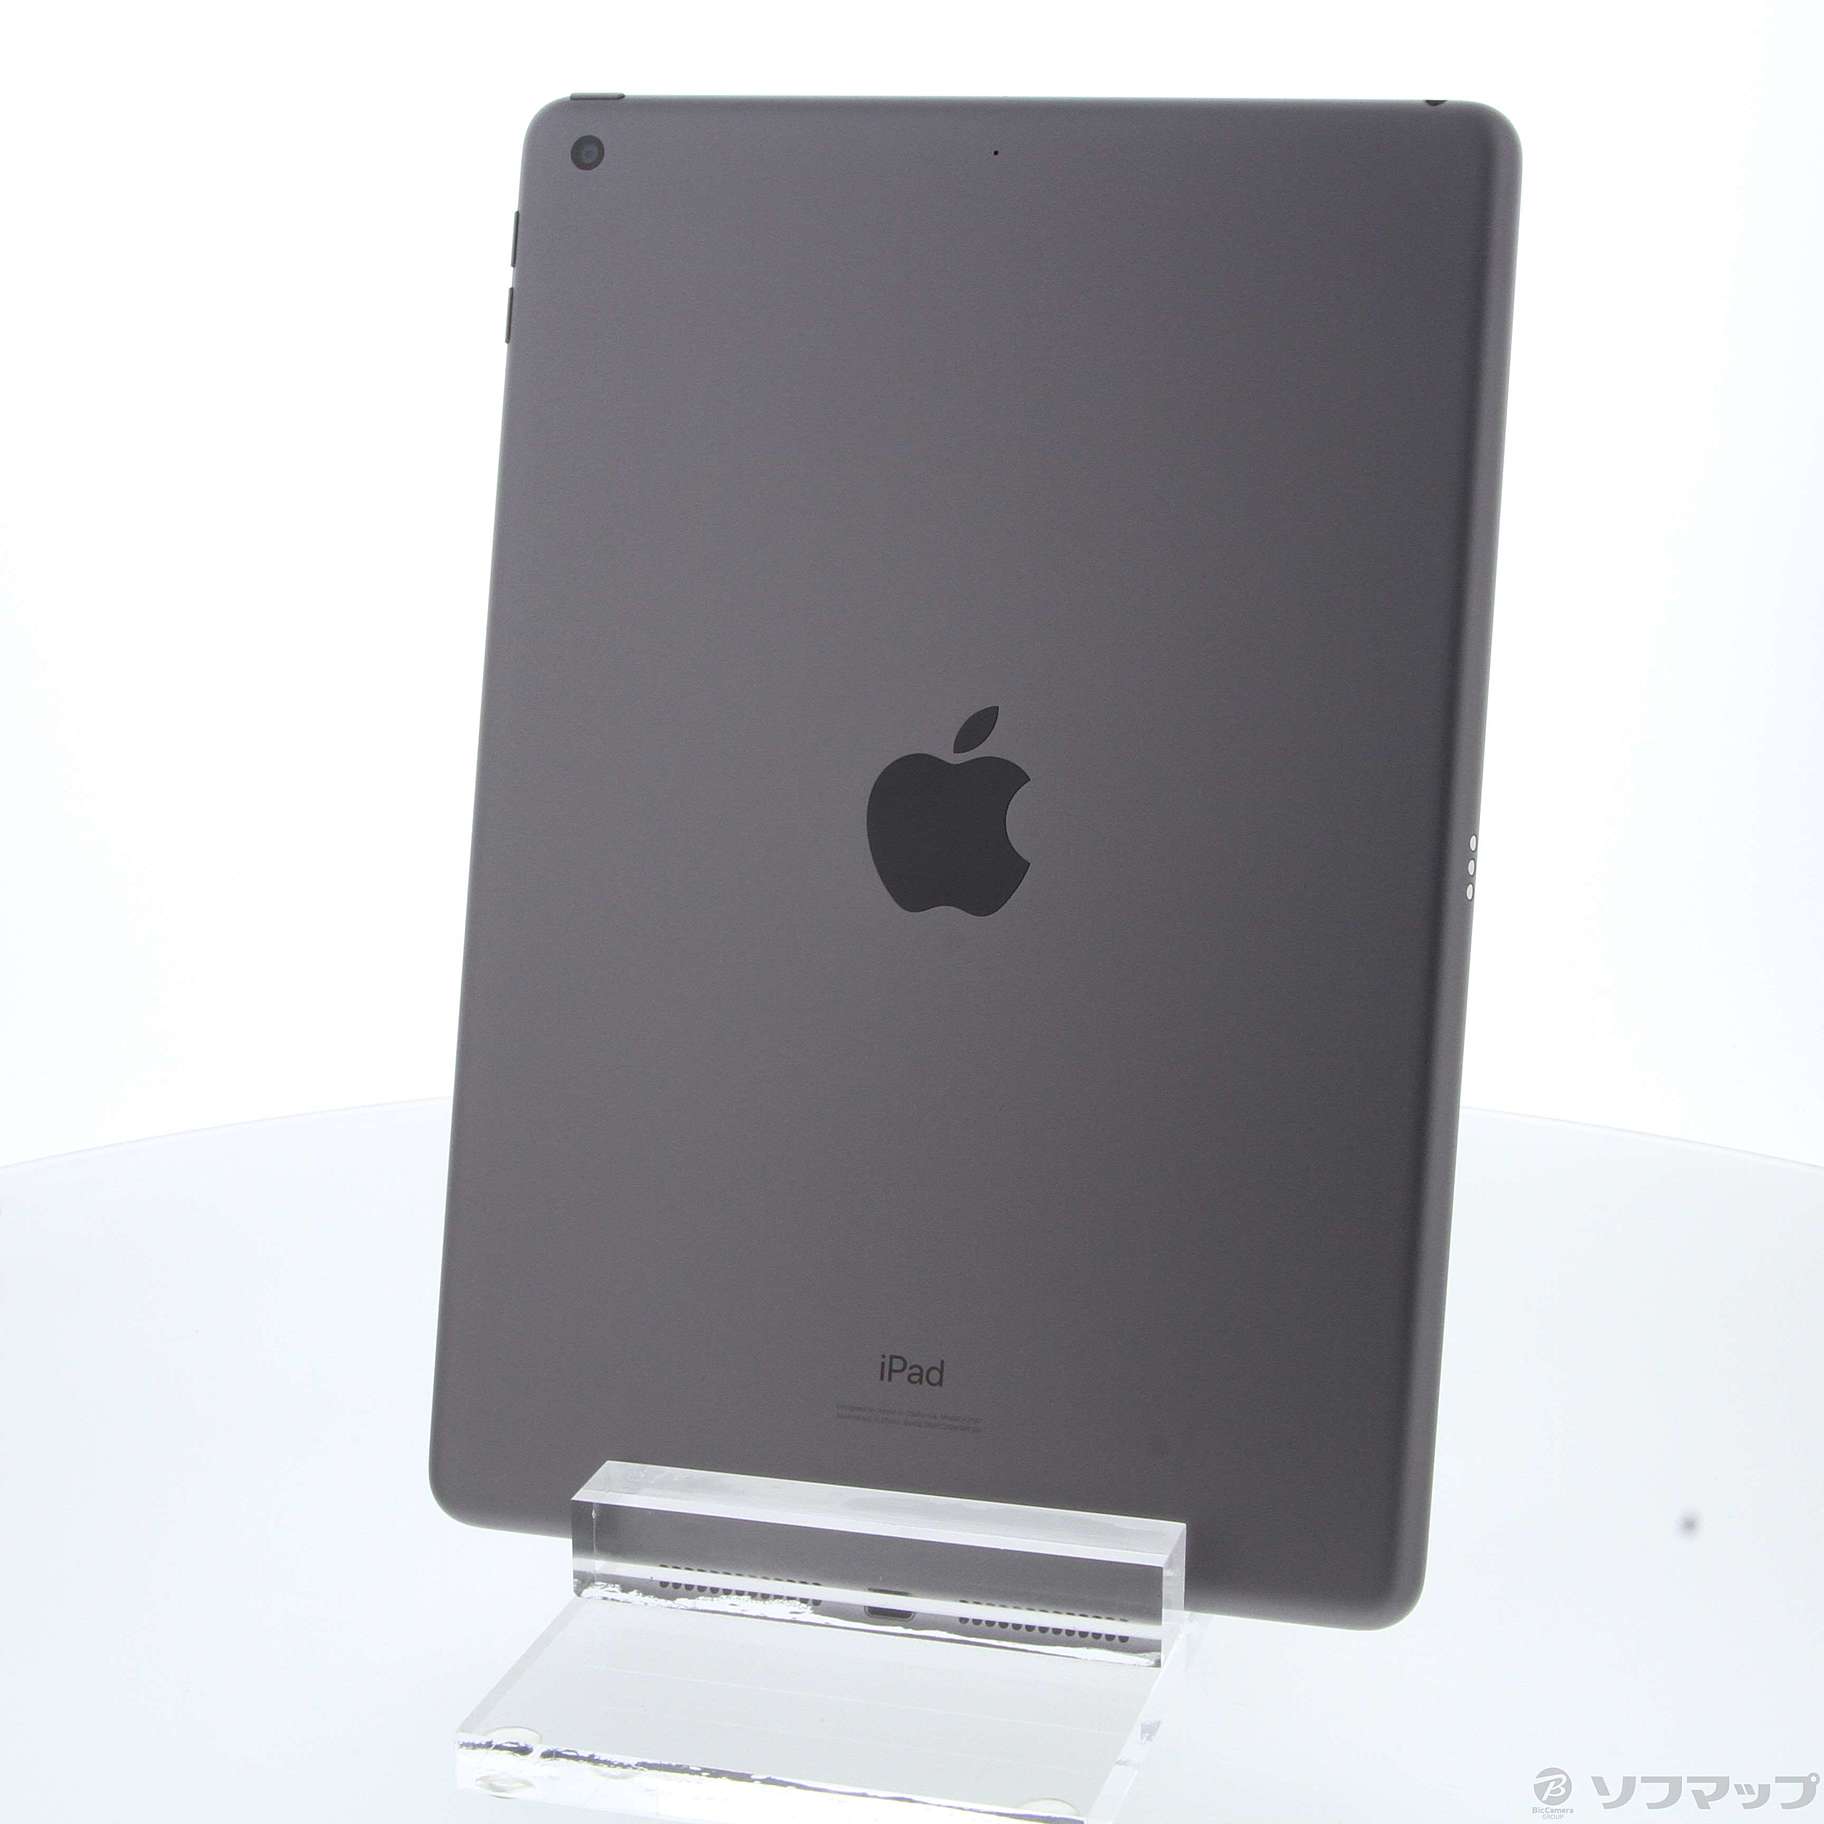 (中古)Apple iPad 第7世代 32GB スペースグレイ MW742J/A Wi-Fi(377-ud)